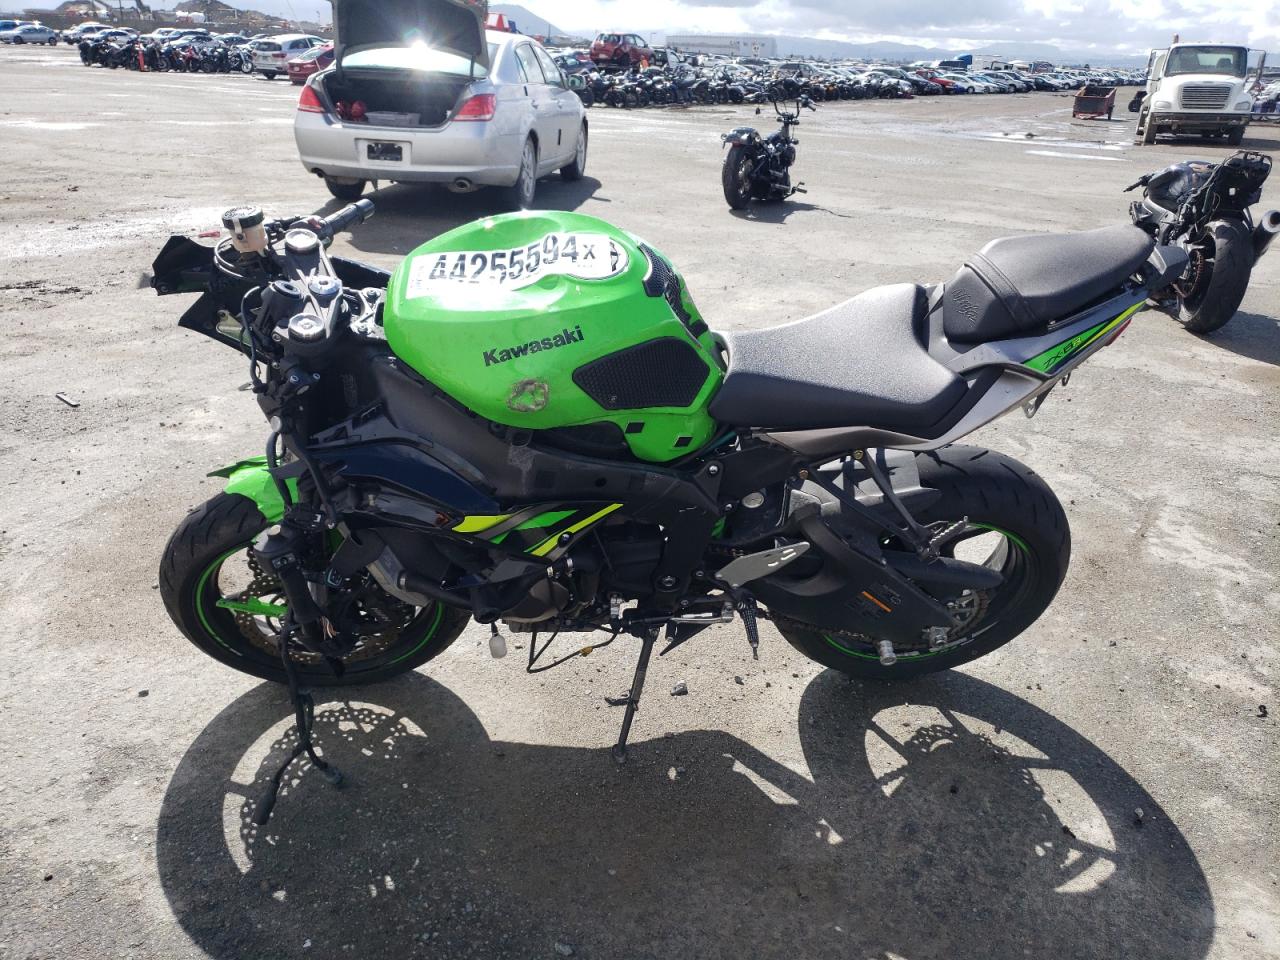 2019 Kawasaki Ninja ZX-6R ABS at CA - San Diego, Copart lot 